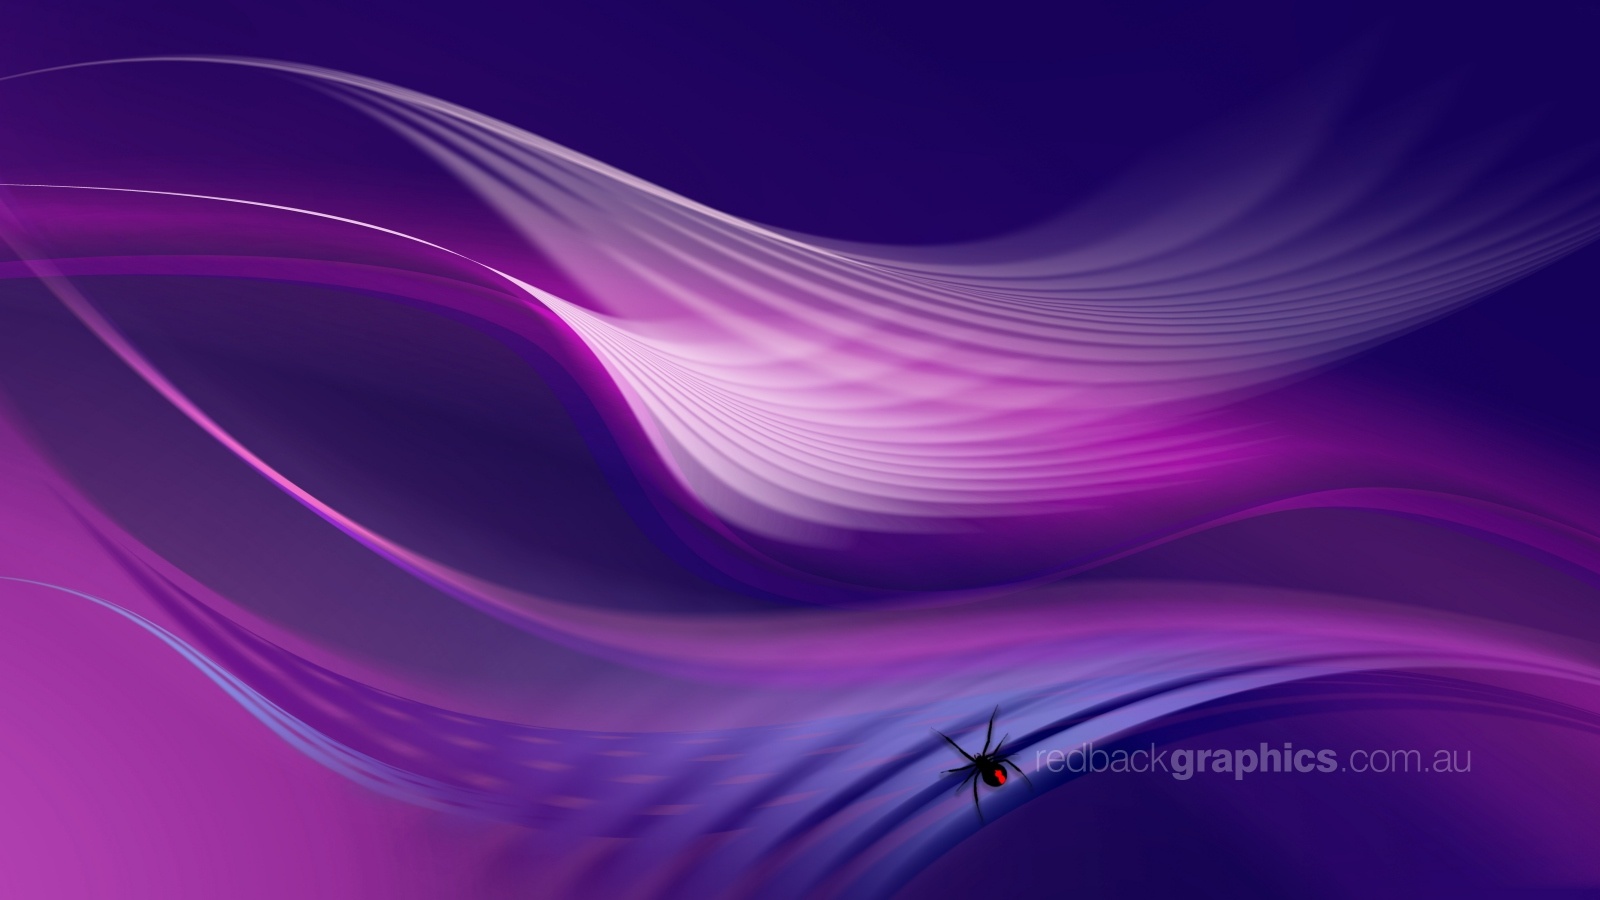 descarga de fondos de pantalla de gráficos,azul,violeta,púrpura,lila,rosado